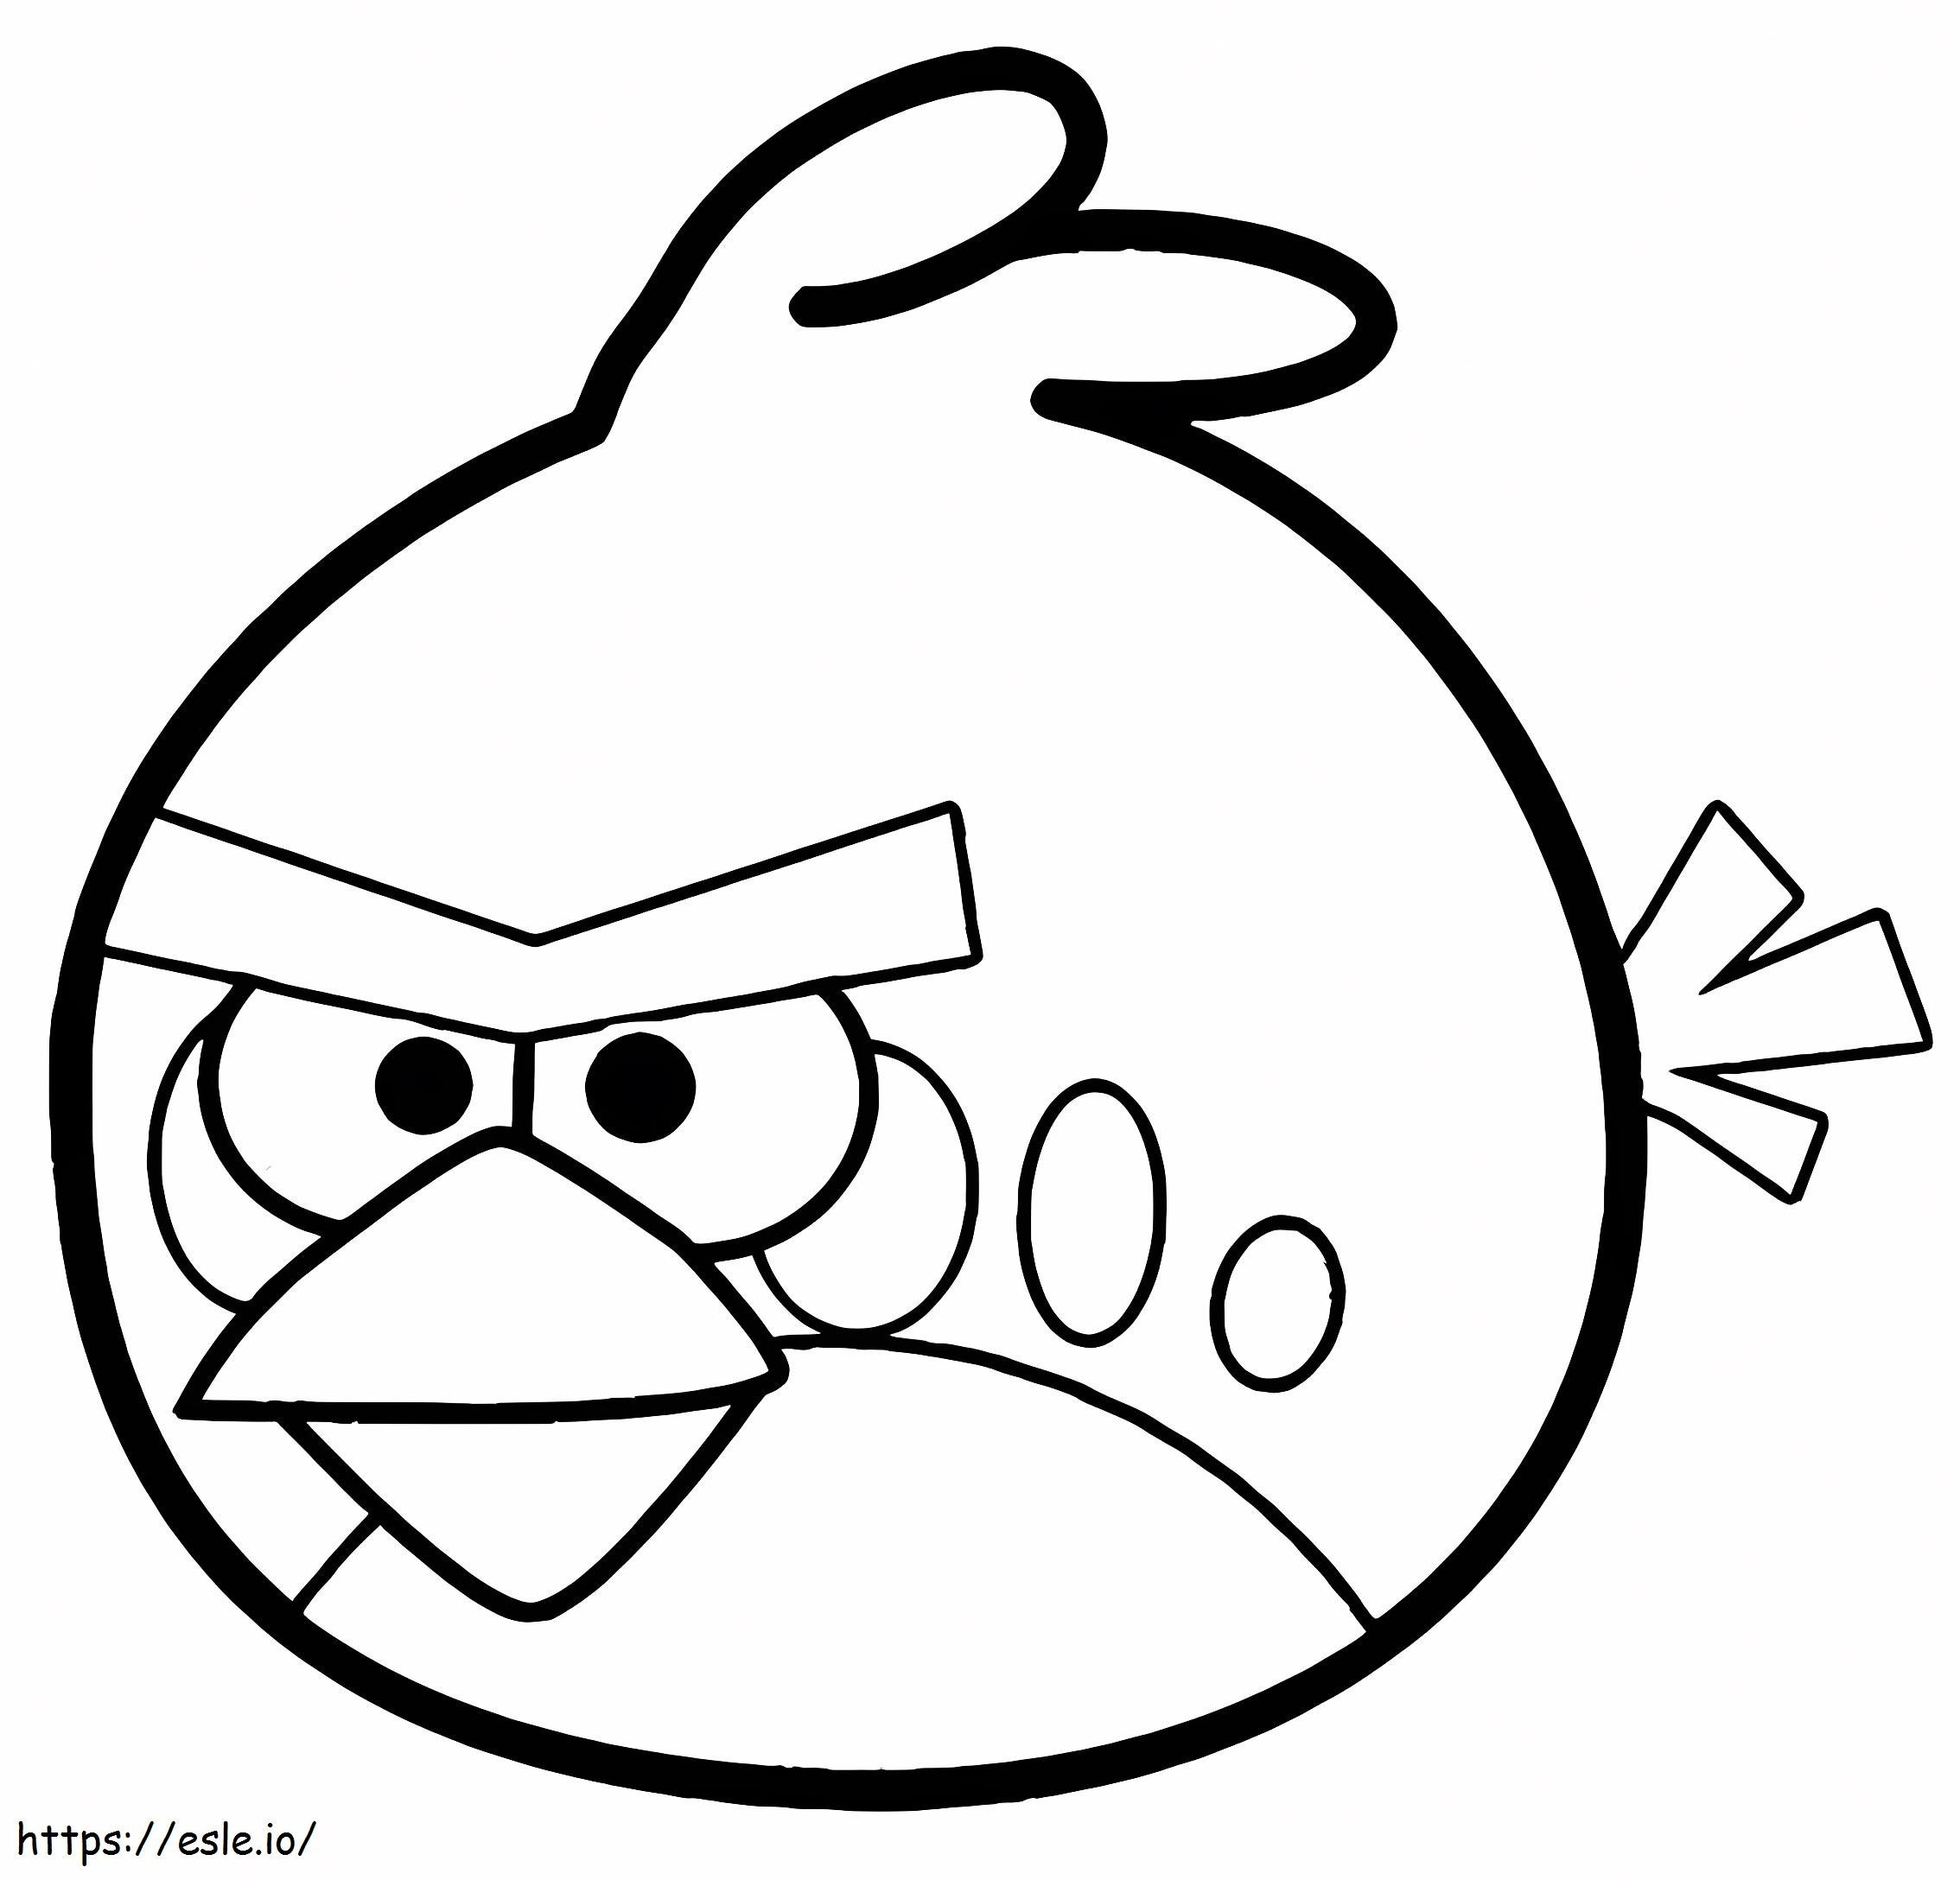 Etkileyici Angry Birds boyama